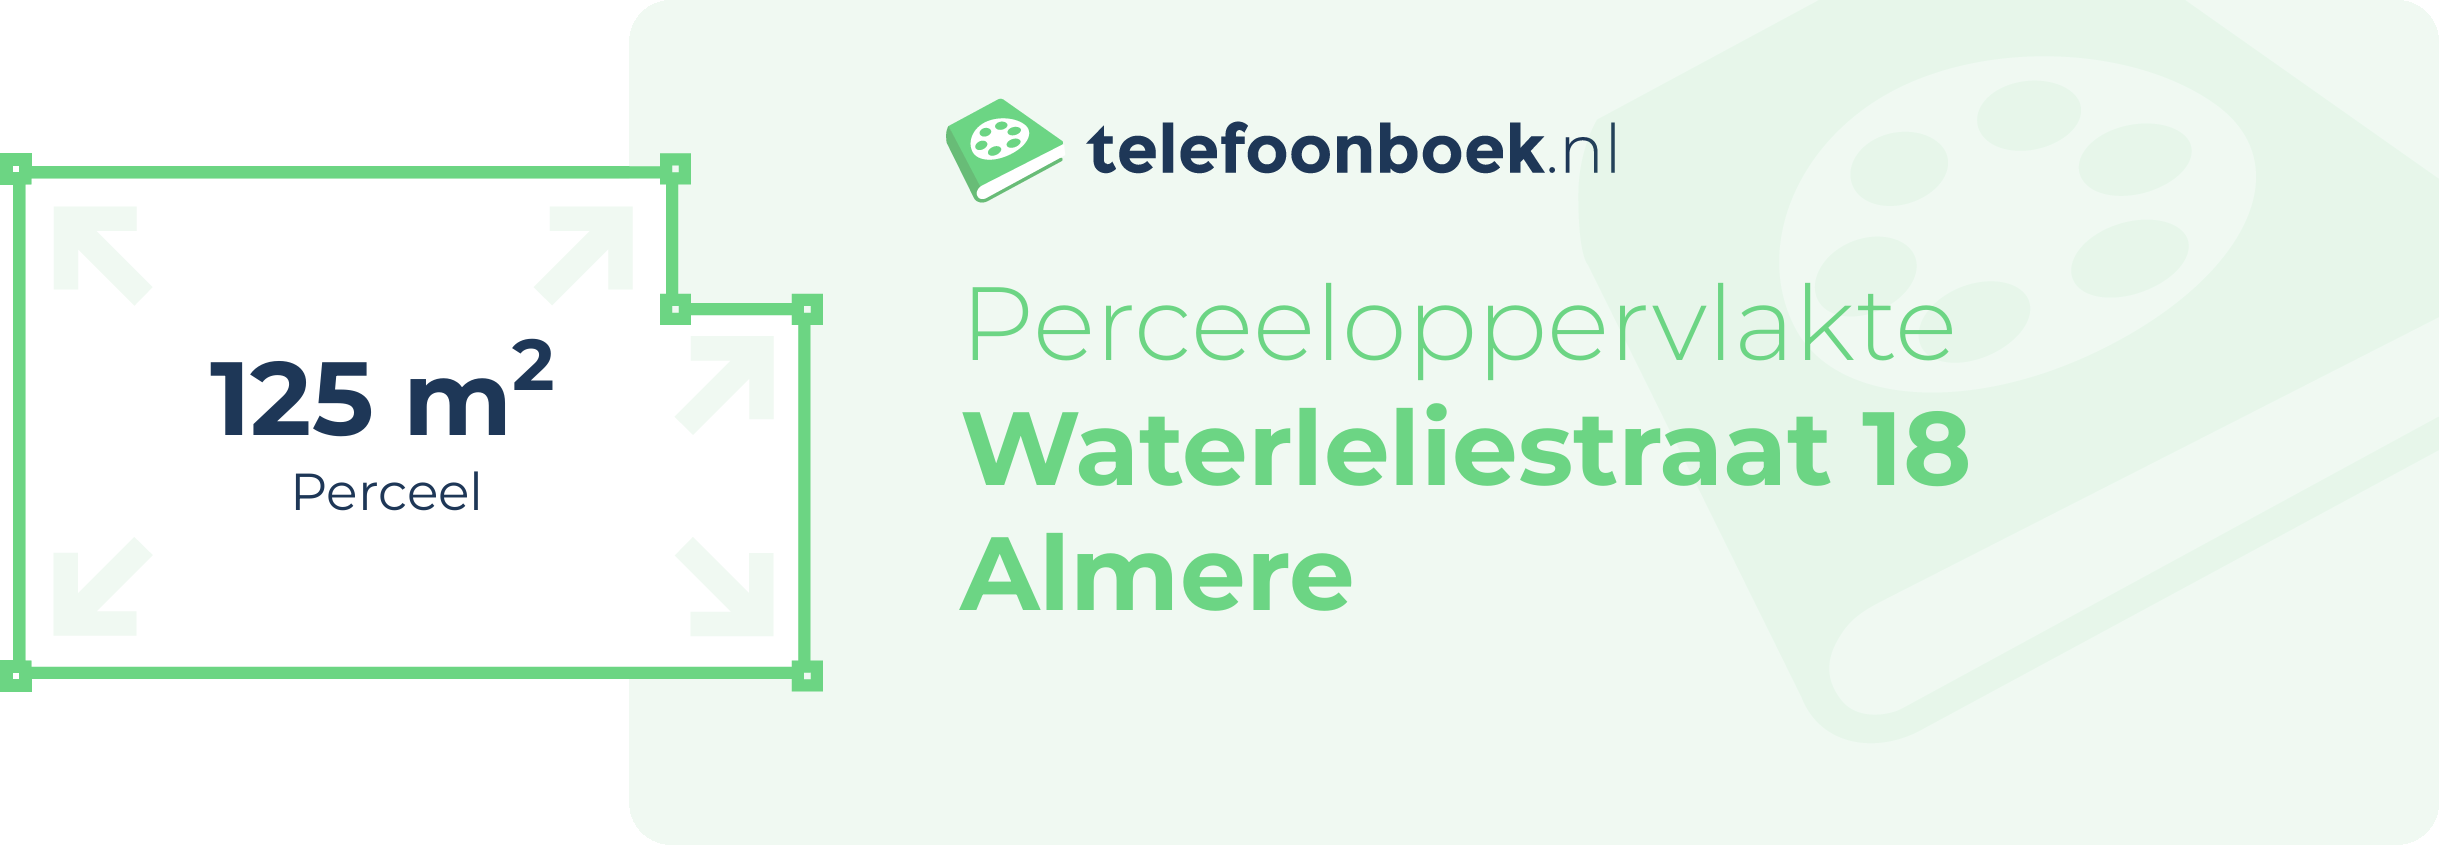 Perceeloppervlakte Waterleliestraat 18 Almere